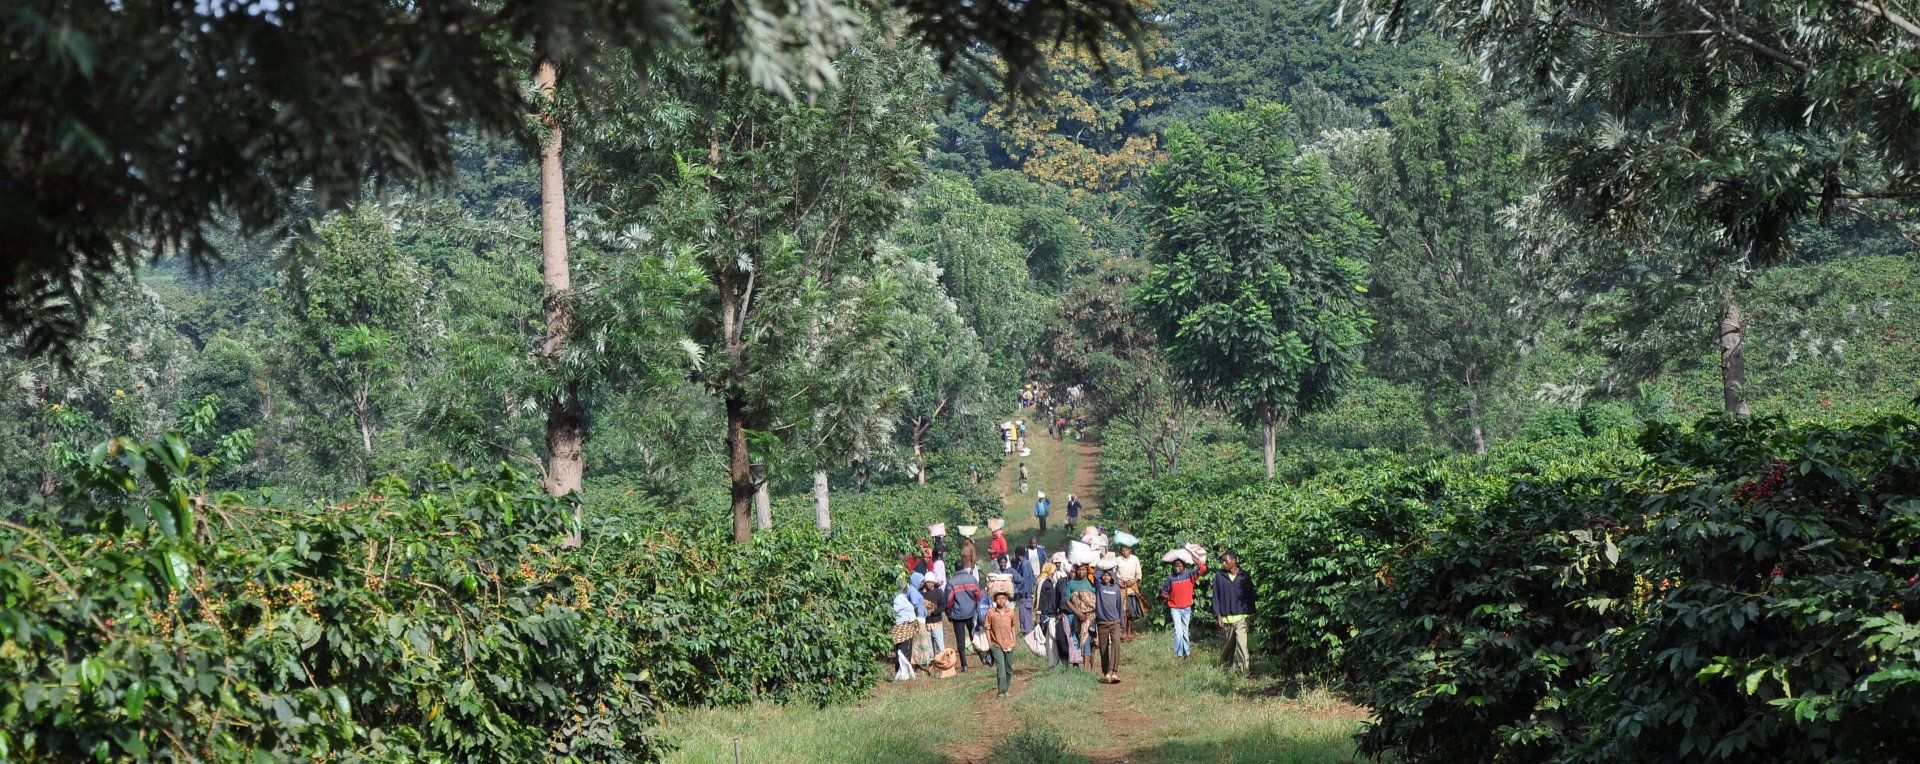 Tanzania Coffee Workers